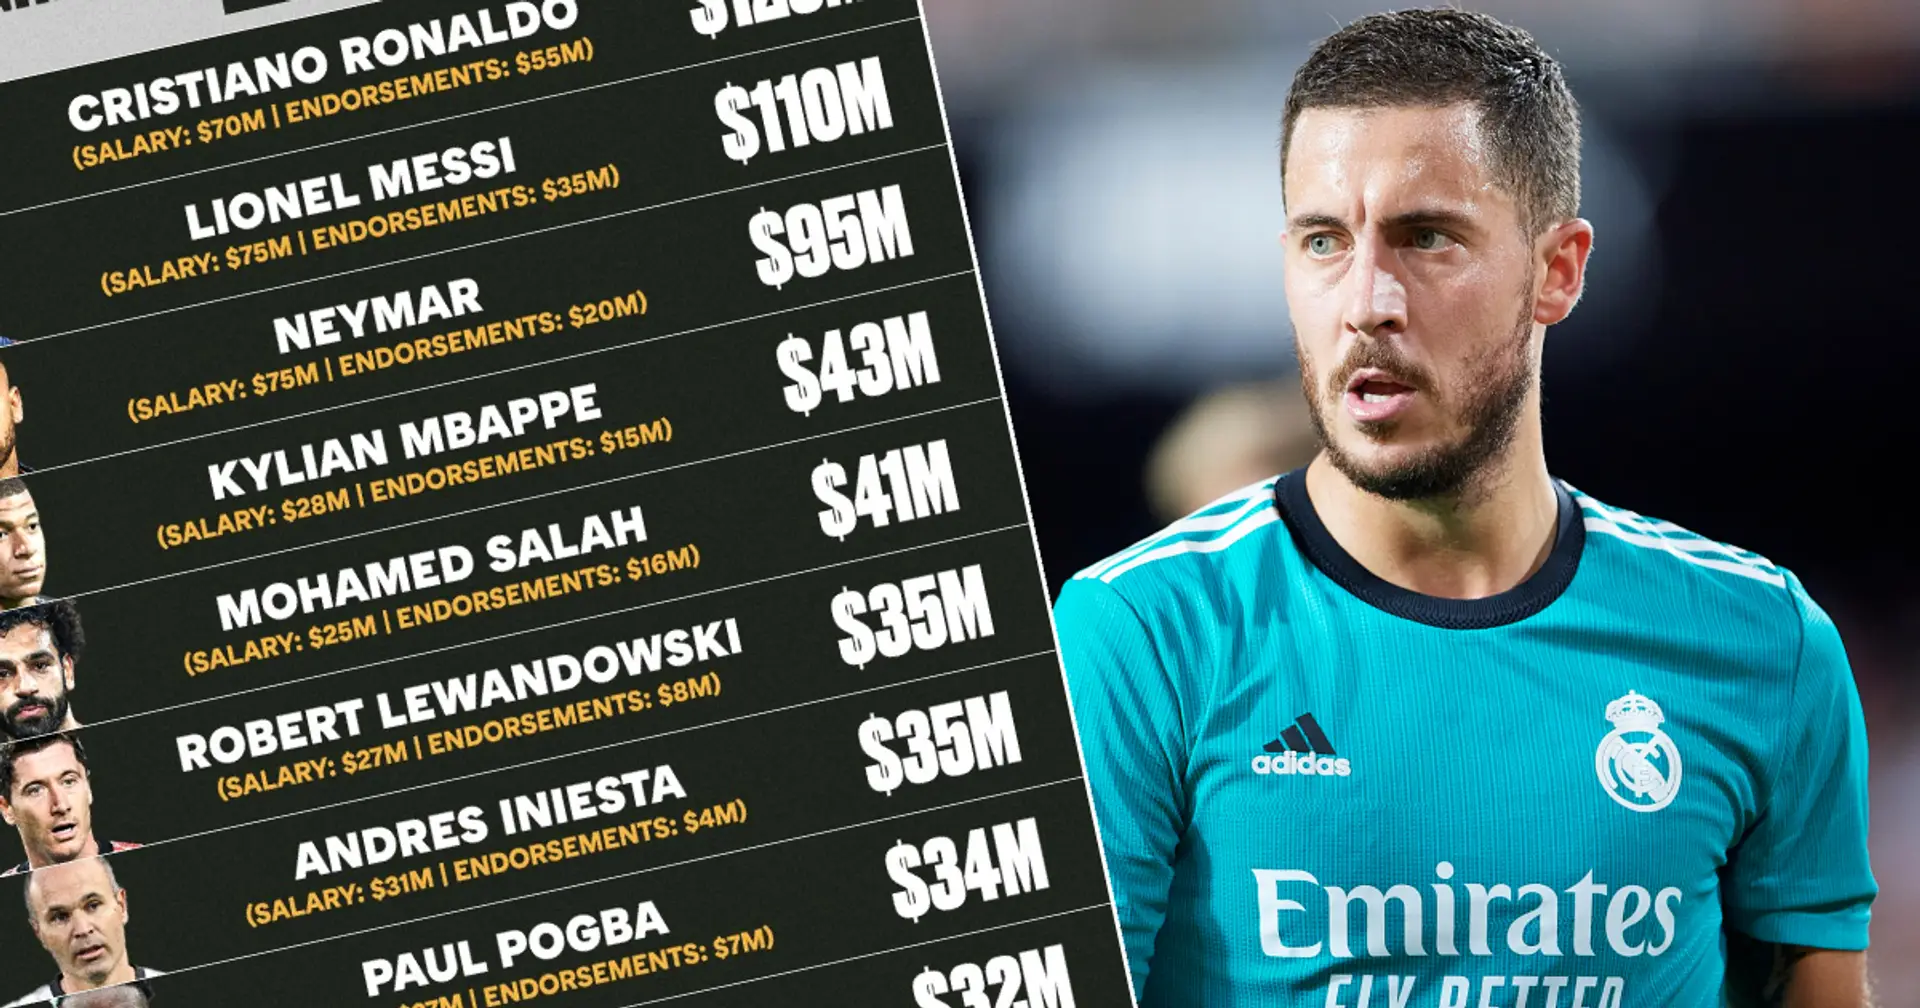 Les footballeurs les mieux payés du monde en 2021 révélés, 2 joueurs du Real Madrid dans le top 10